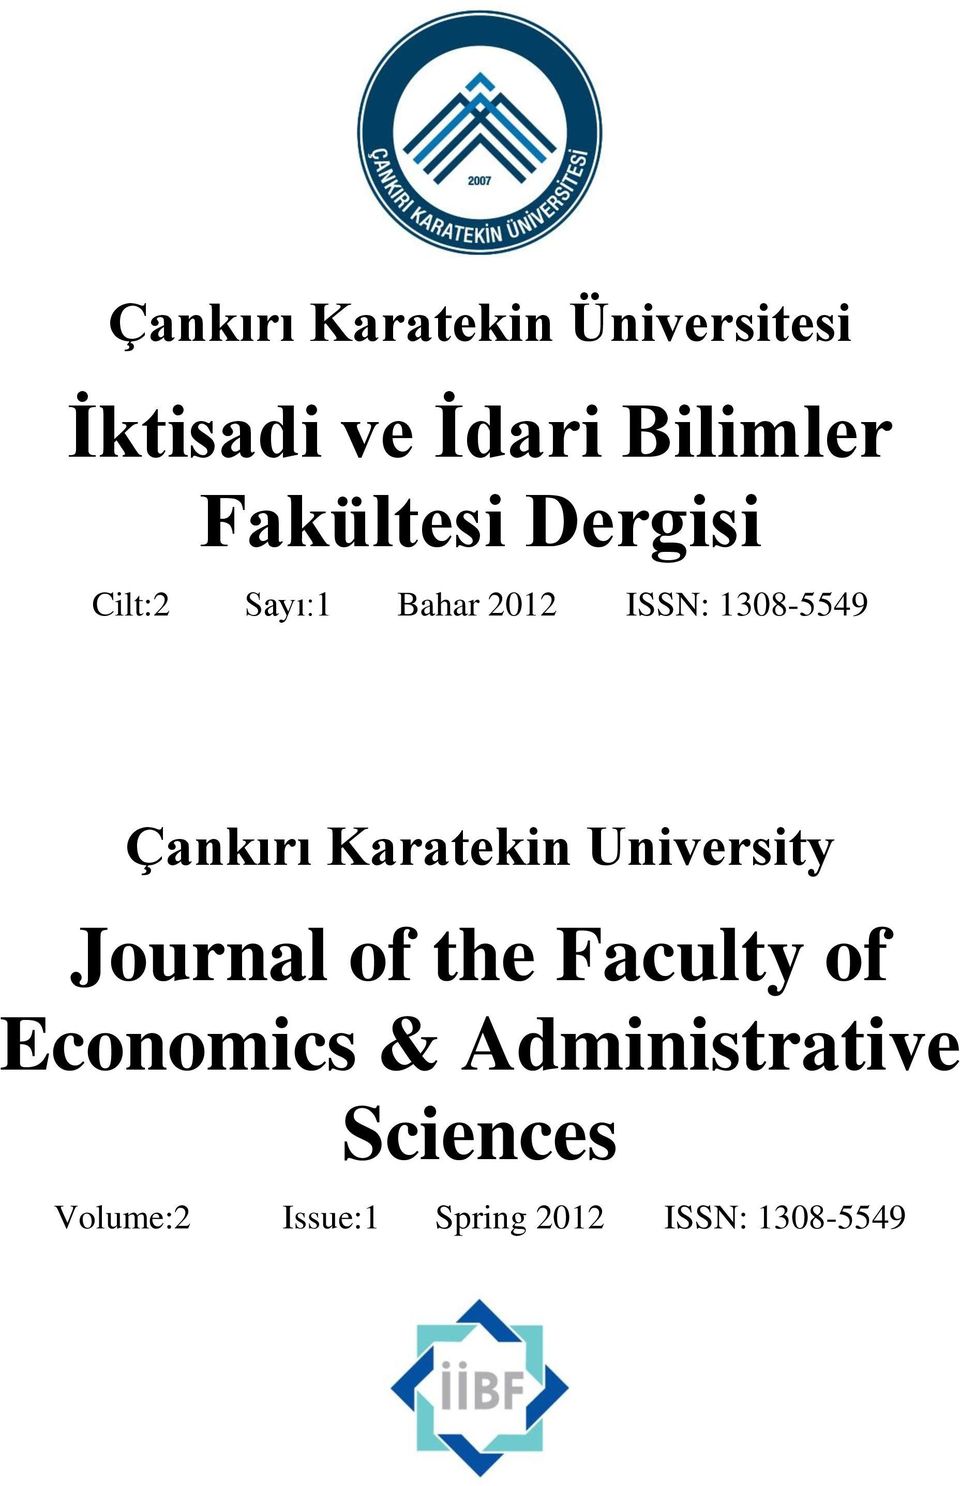 Çankırı Karatekin University Journal of the Faculty of